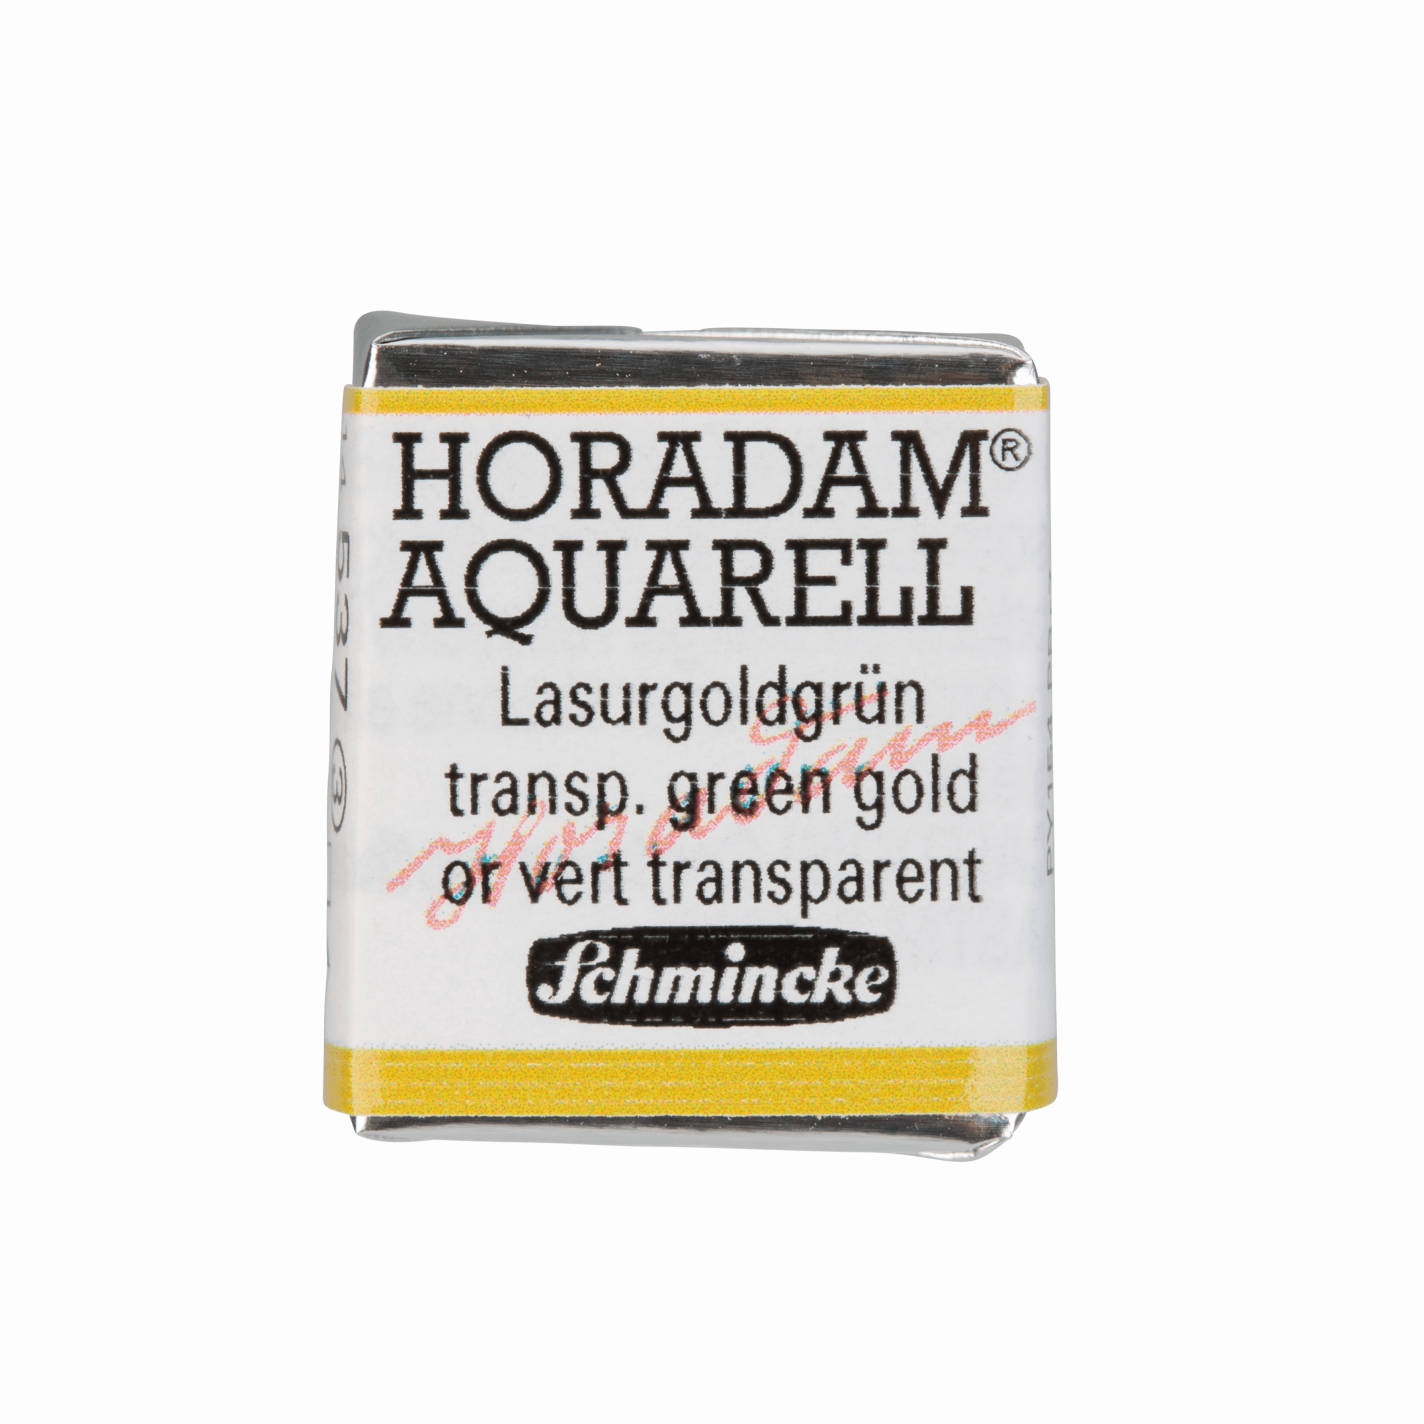 Schmincke Horadam Aquarell pans 1/2 pan Transparent Green Gold